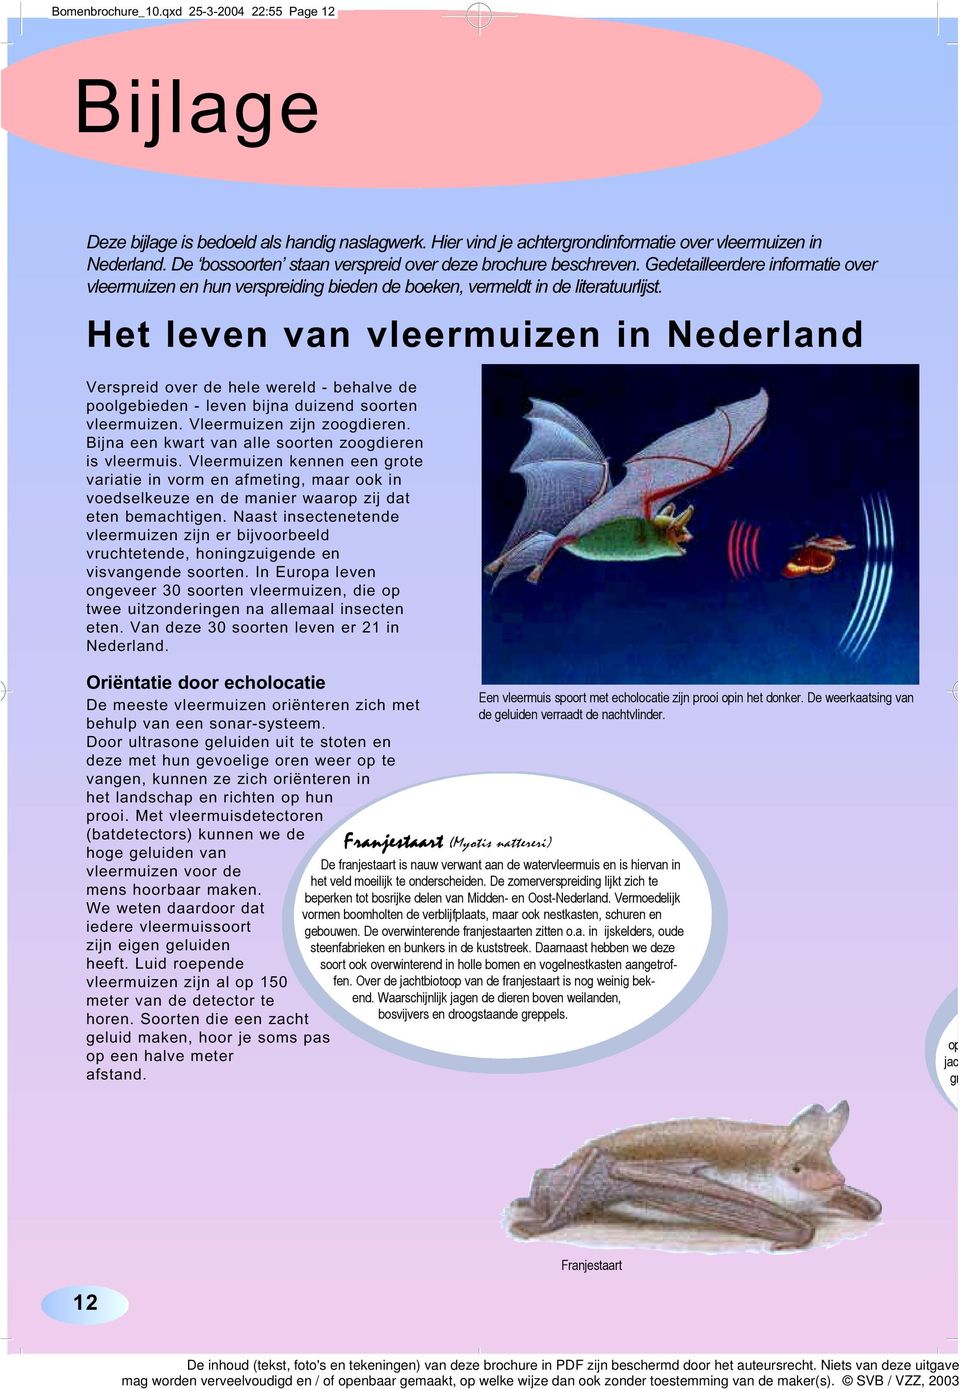 Het leven van vleermuizen in Nederland Verspreid over de hele wereld - behalve de poolgebieden - leven bijna duizend soorten vleermuizen. Vleermuizen zijn zoogdieren.